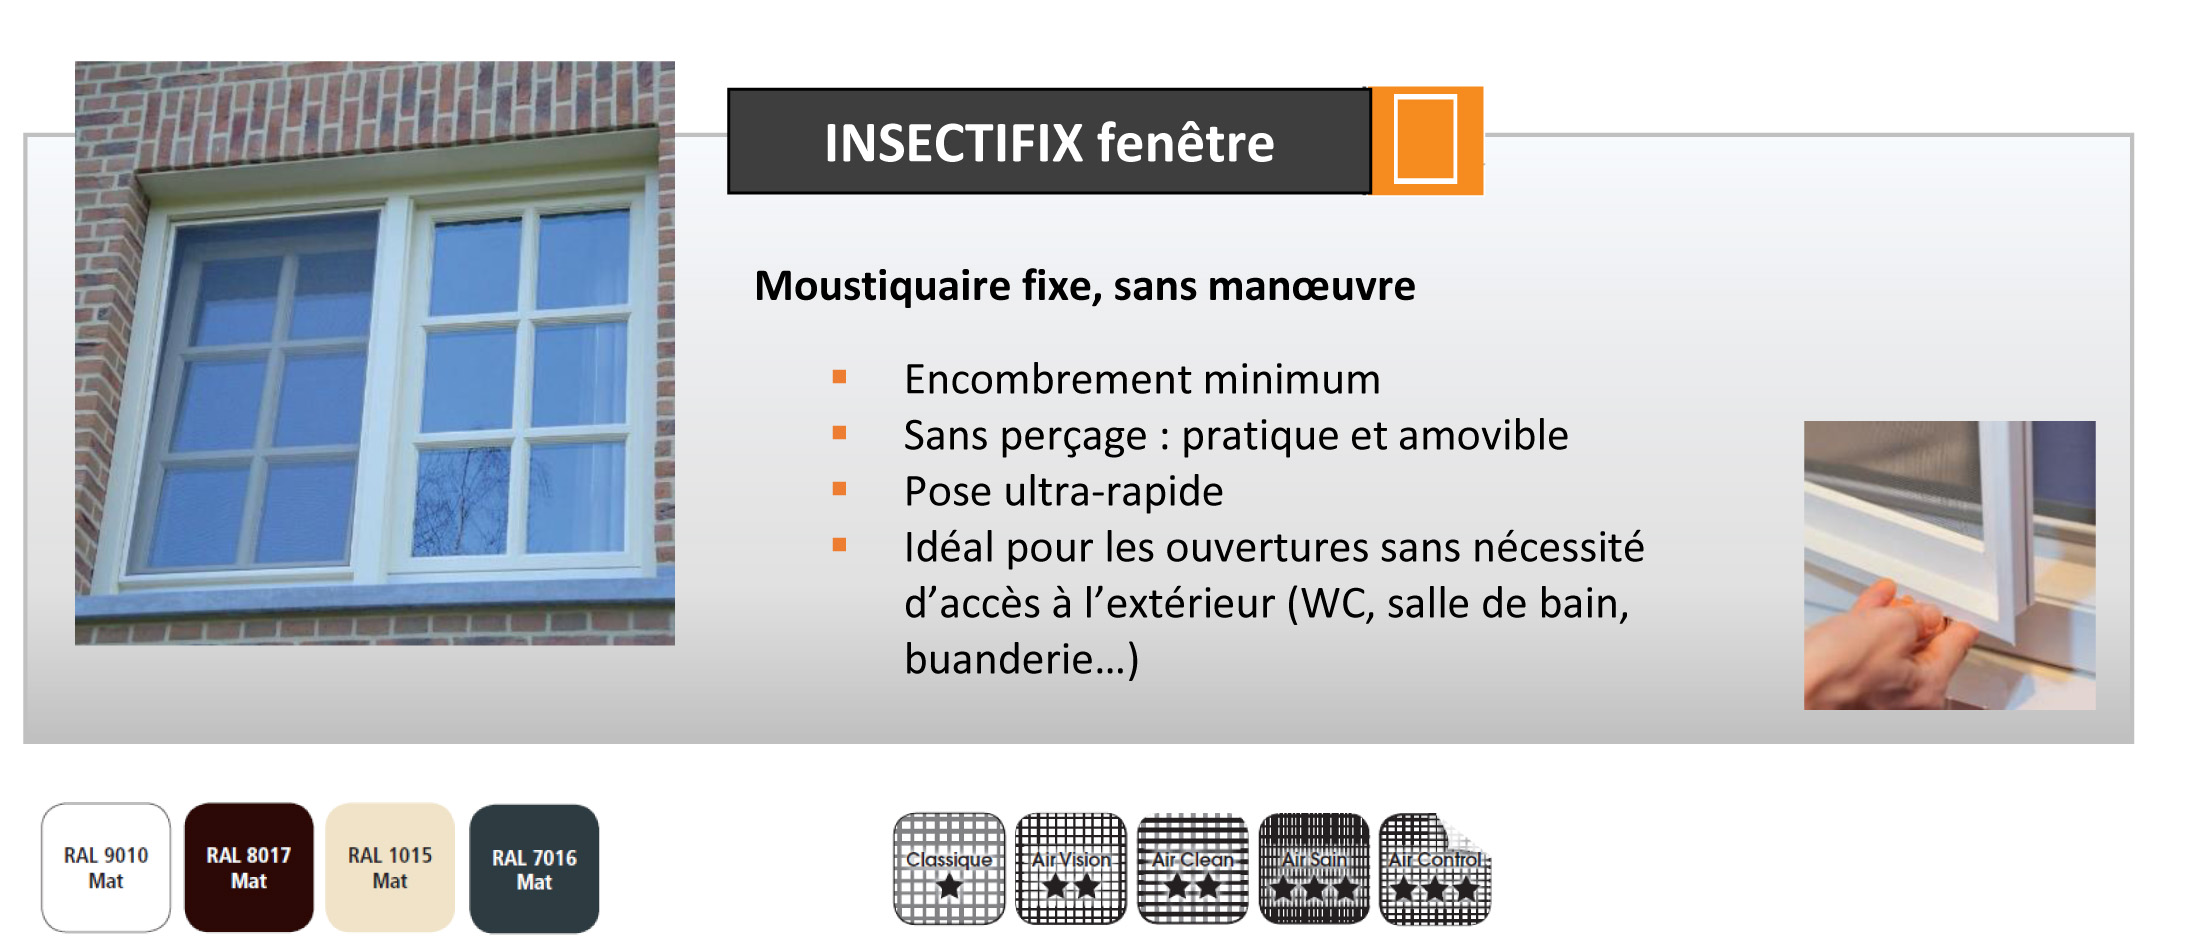 Descriptif du produit Insectifix fenêtre pour prise de mesure moustiquaire